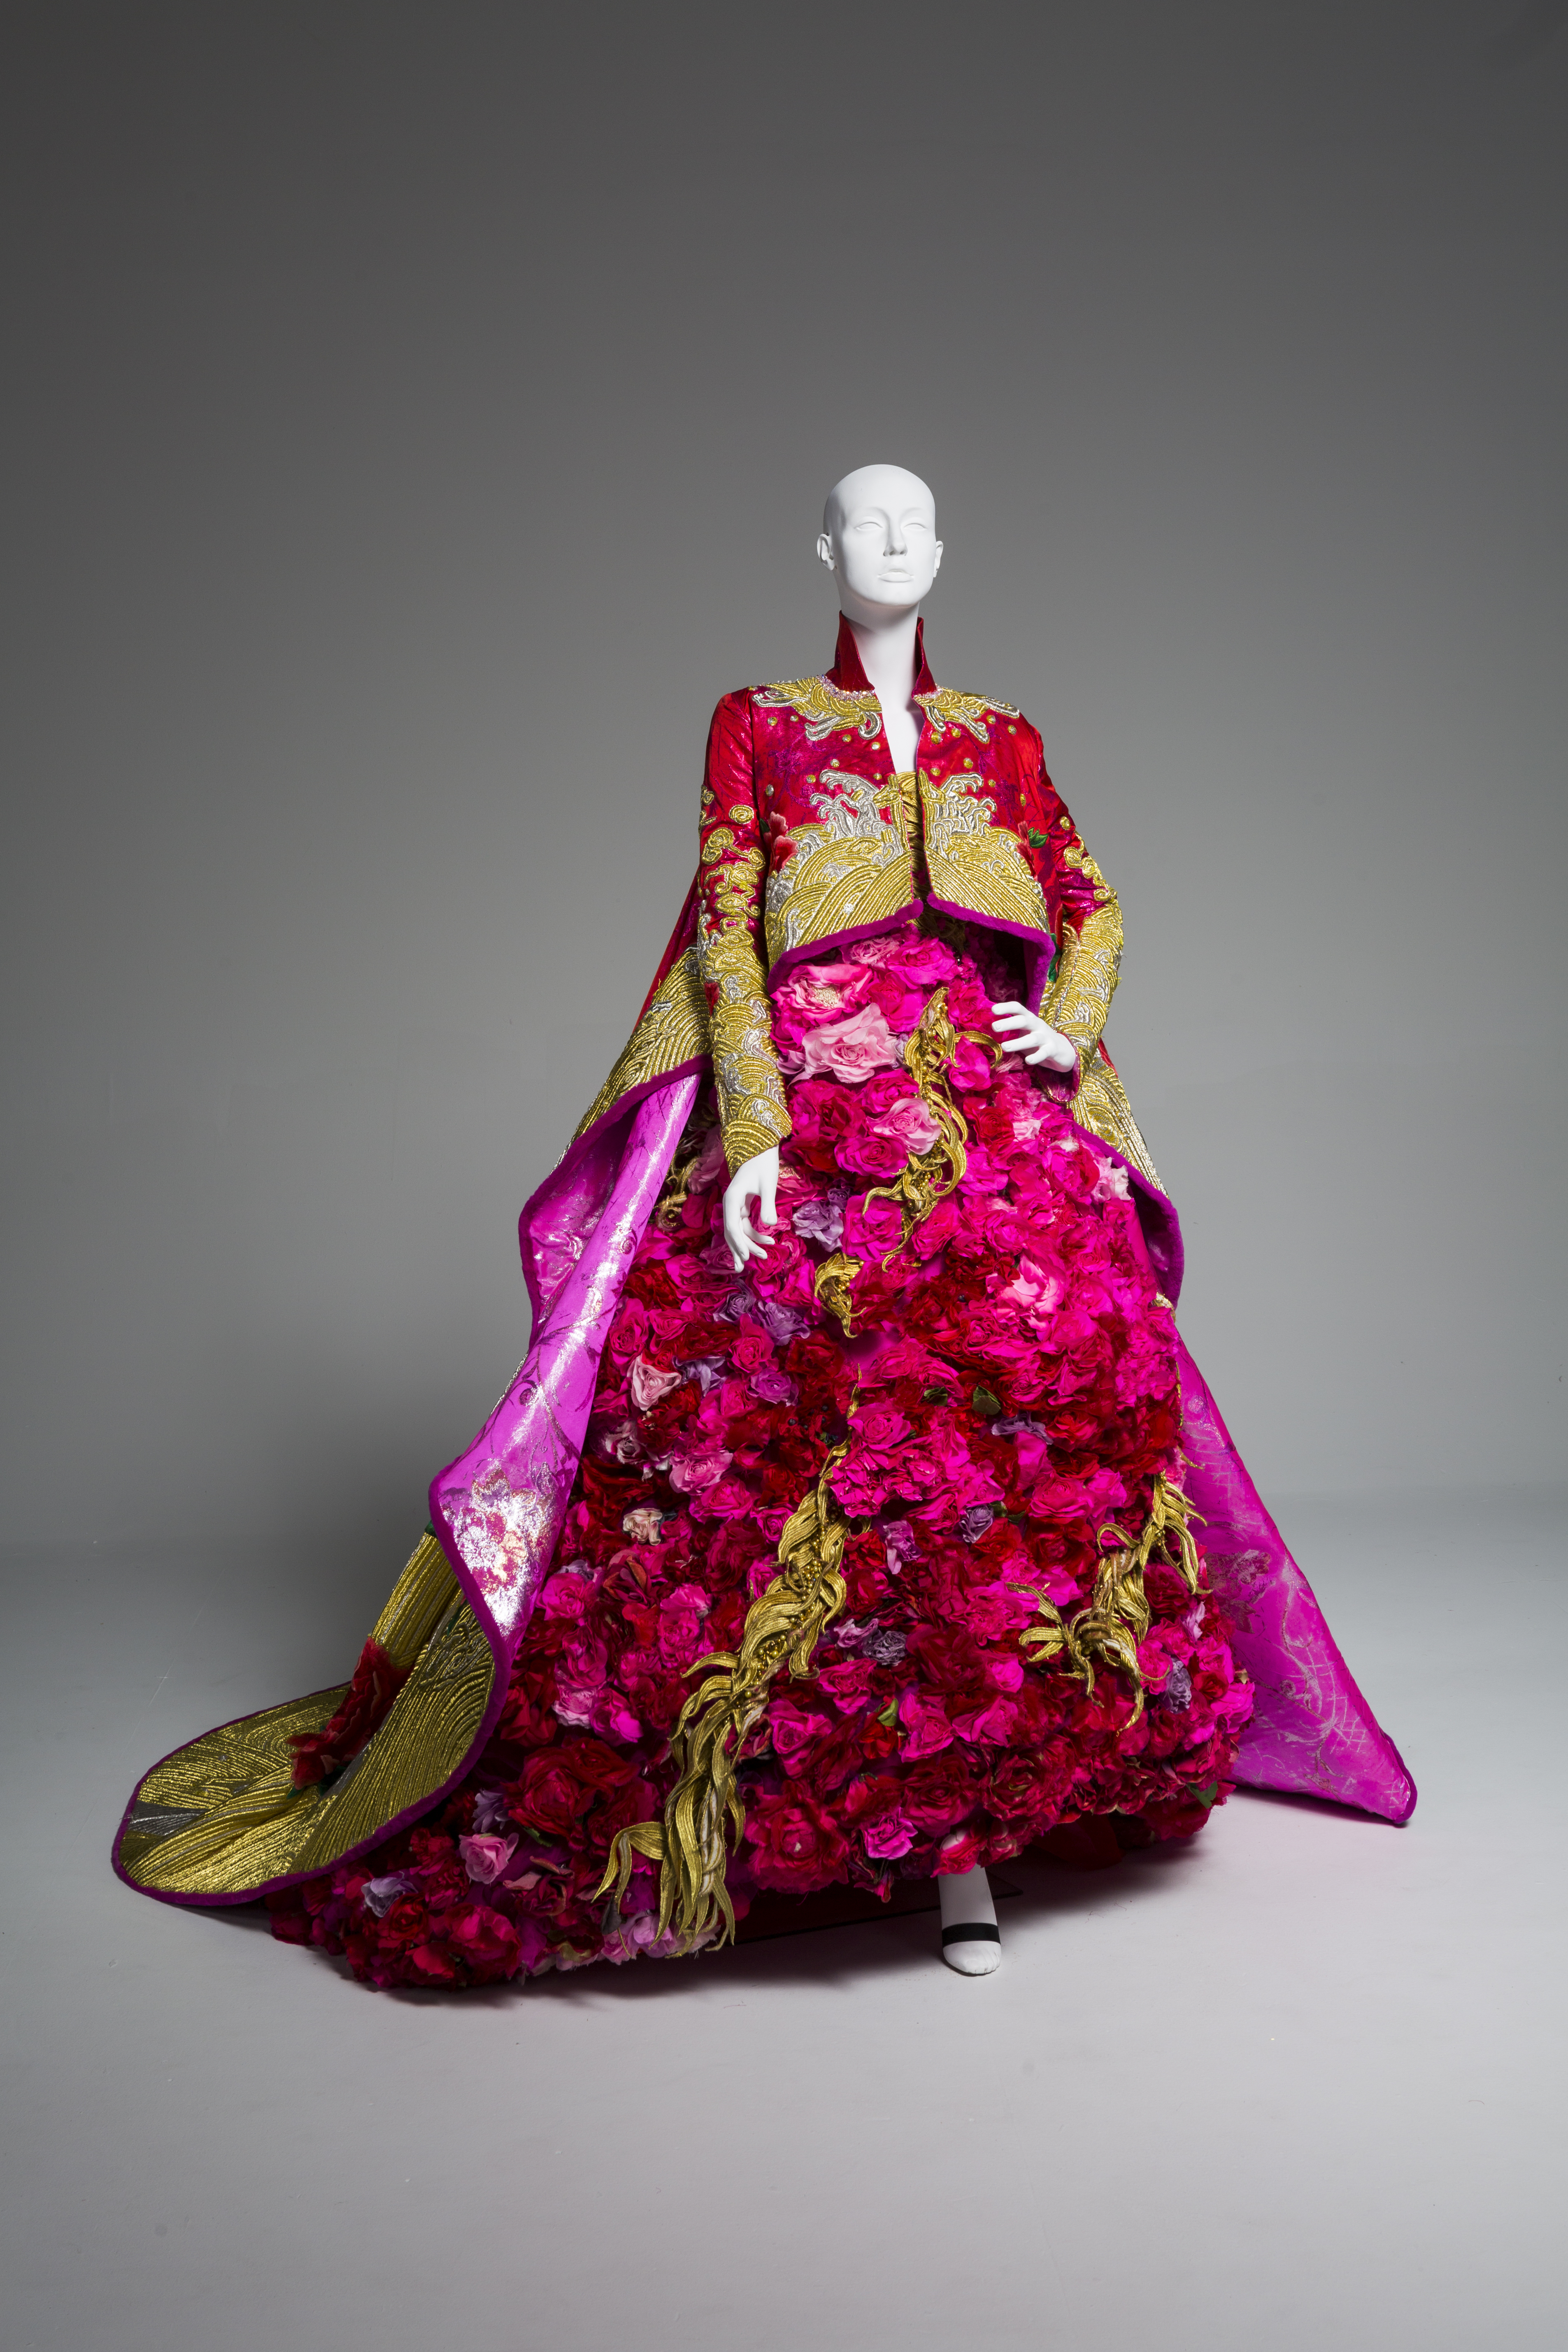 Rihanna's Met Gala Gown Designer Guo Pei Got Her Own Museum Exhibit